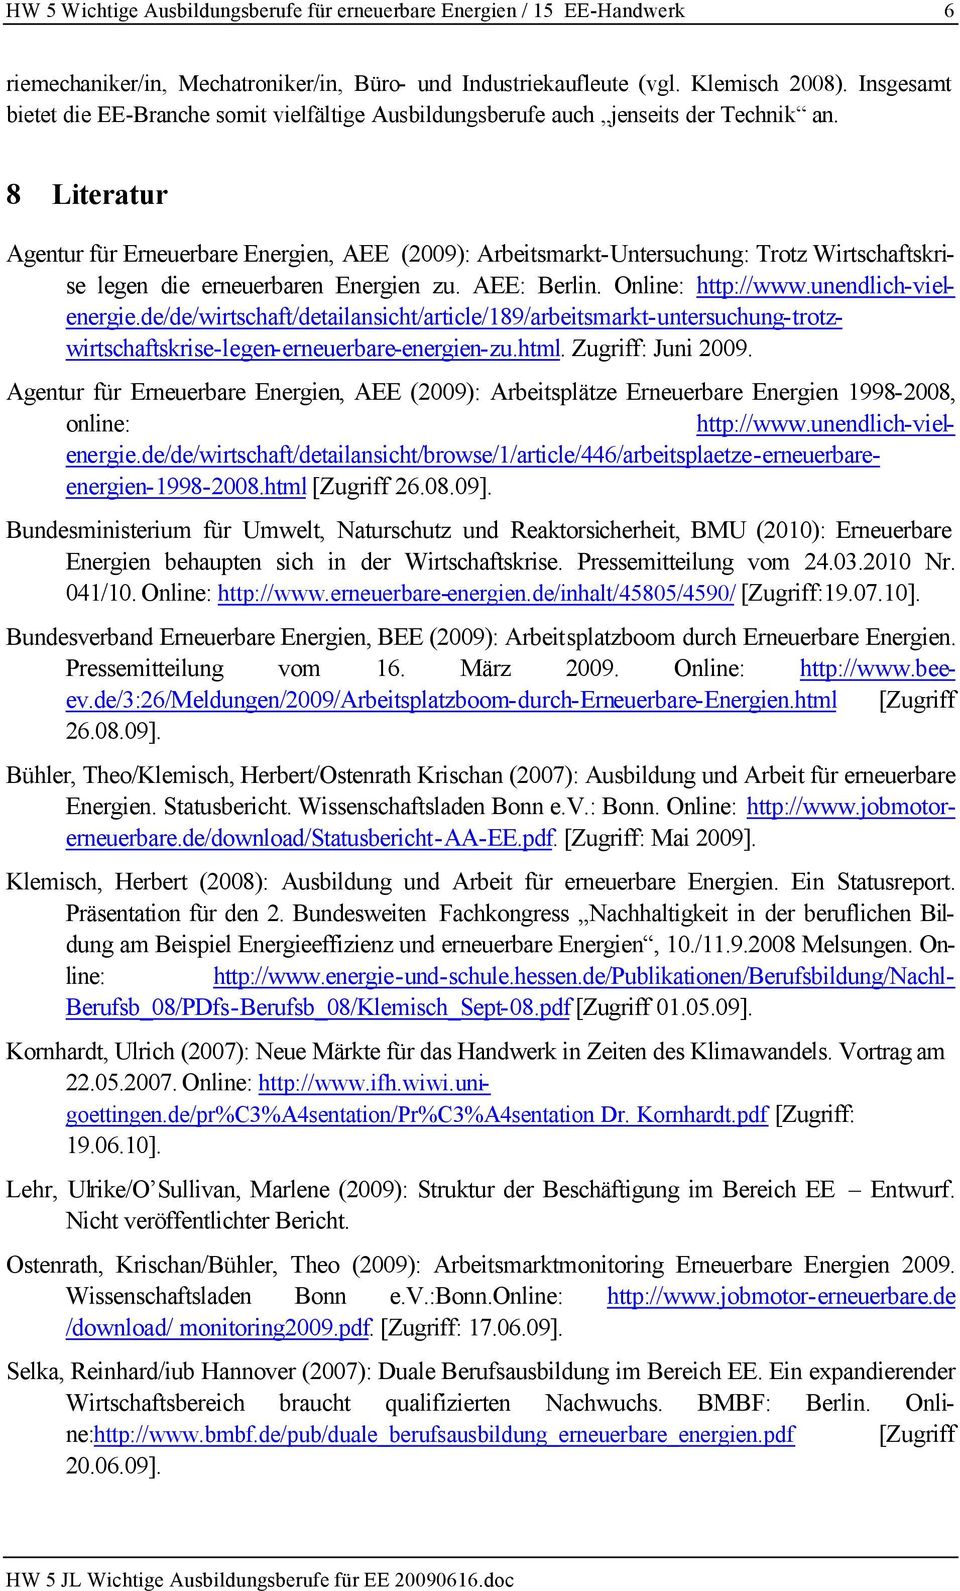 8 Literatur Agentur für Erneuerbare Energien, AEE (2009): Arbeitsmarkt-Untersuchung: Trotz Wirtschaftskrise legen die erneuerbaren Energien zu. AEE: Berlin. Online: http://www.unendlich-vielenergie.